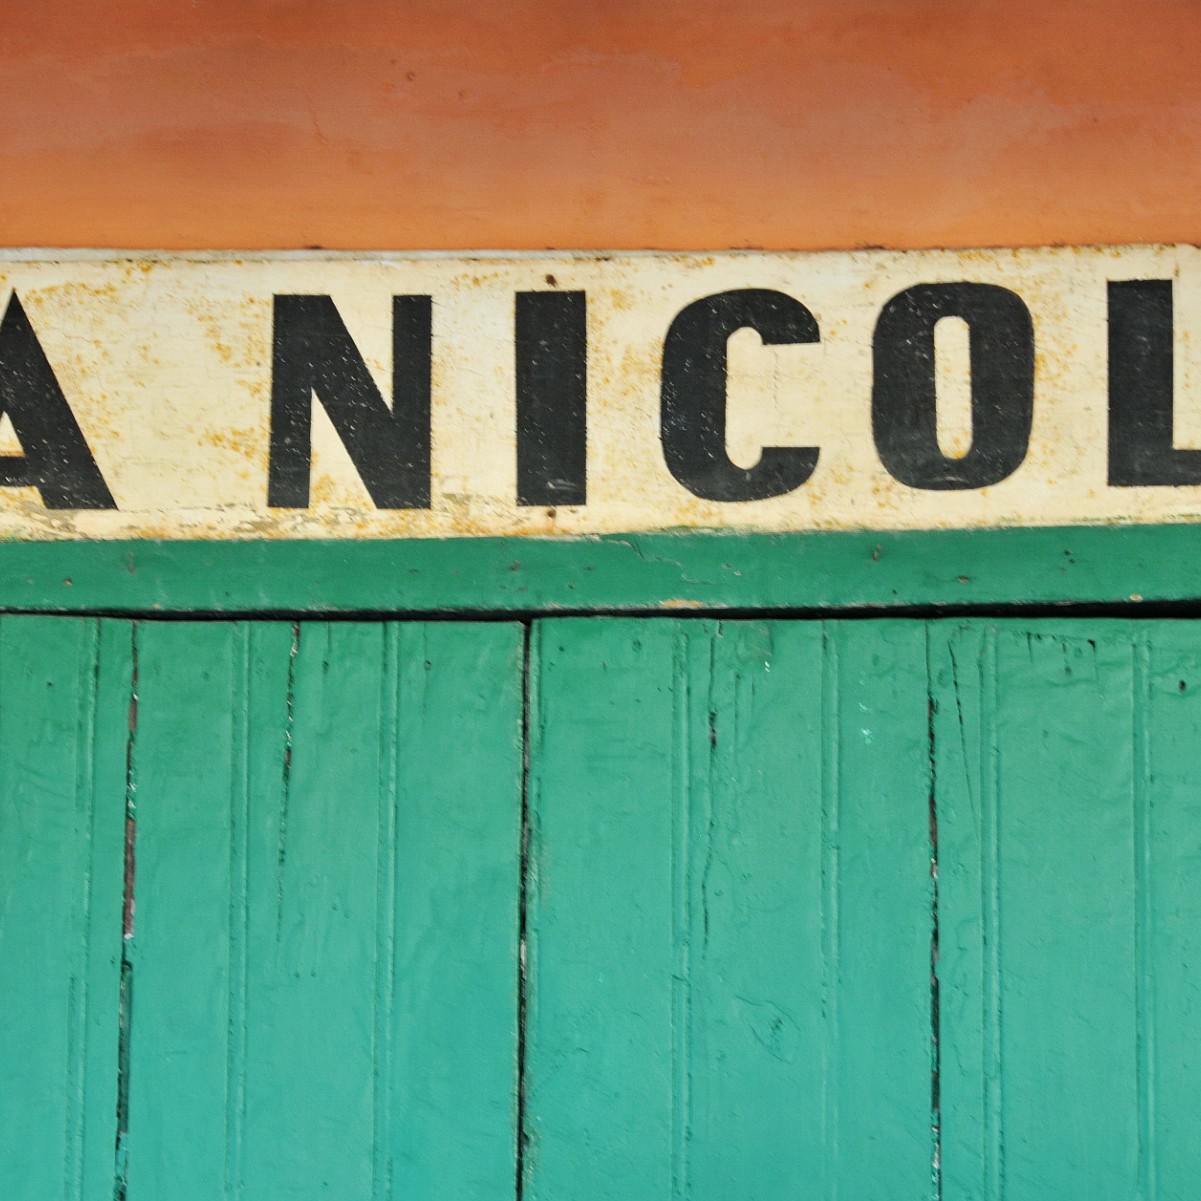 2014-10 Ischia [433] Ischia, Italien - Schilder, Signs, Typo